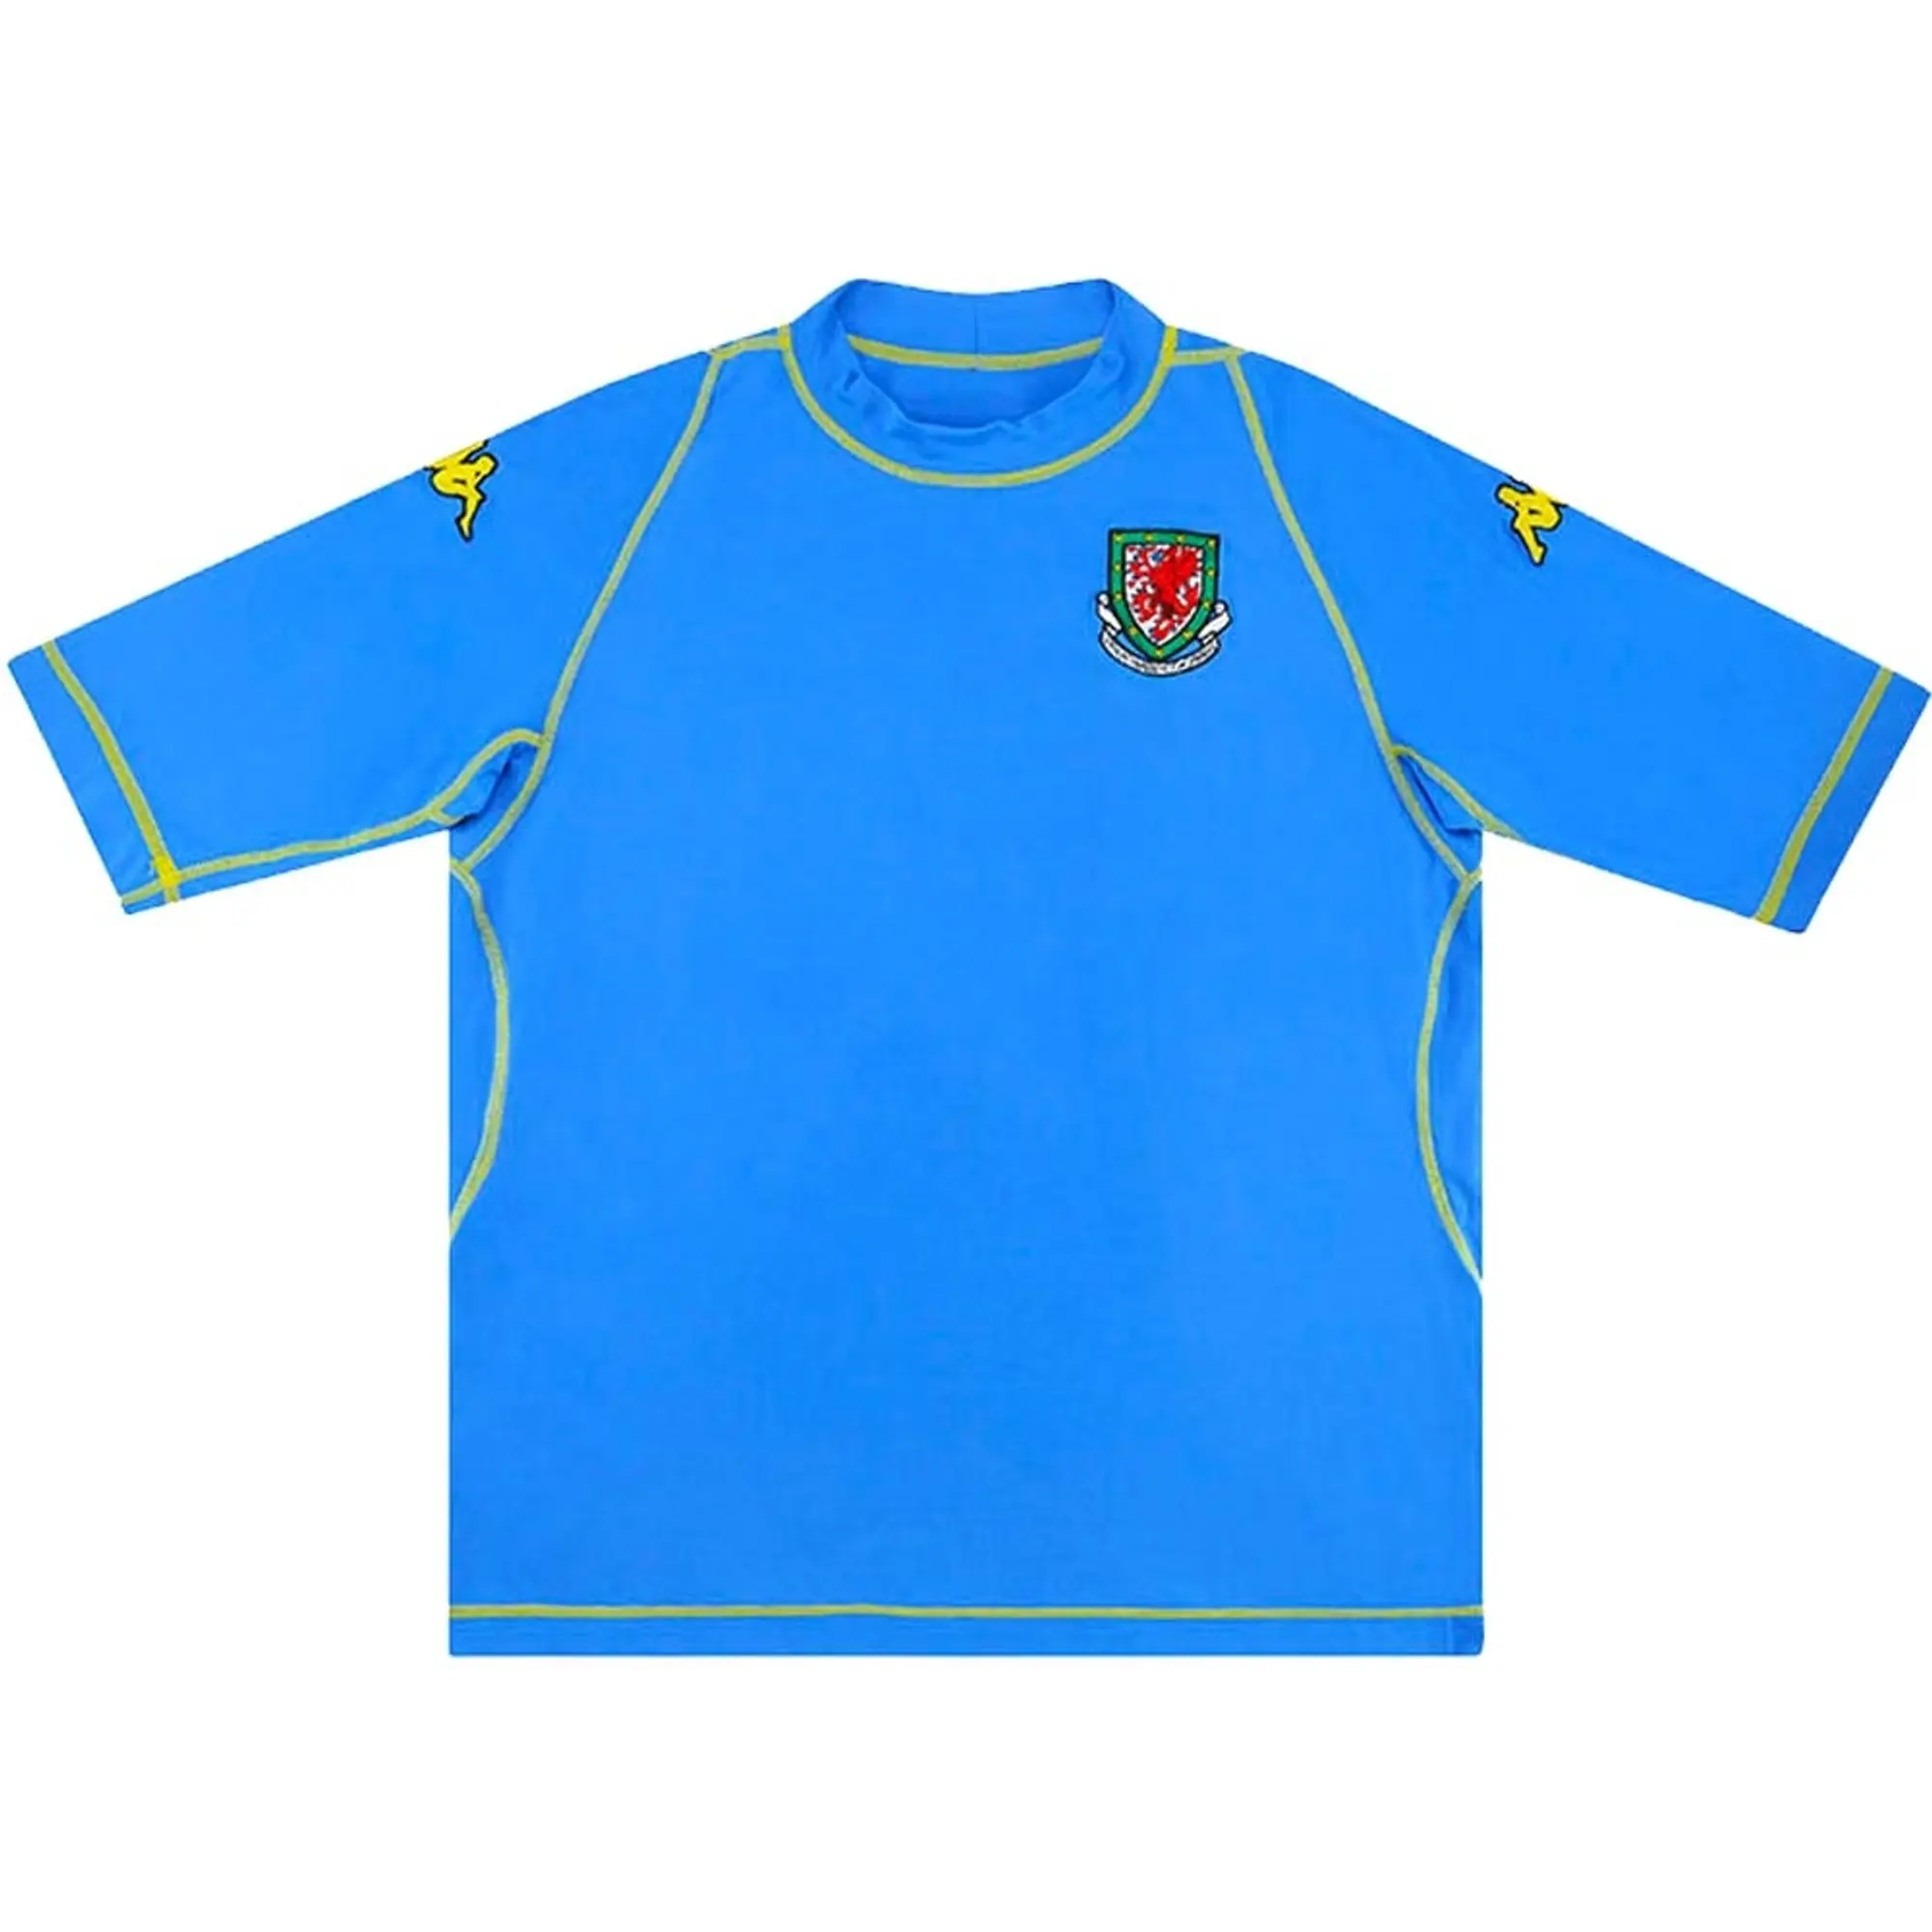 Kappa Wales Mens SS Third Shirt 2003